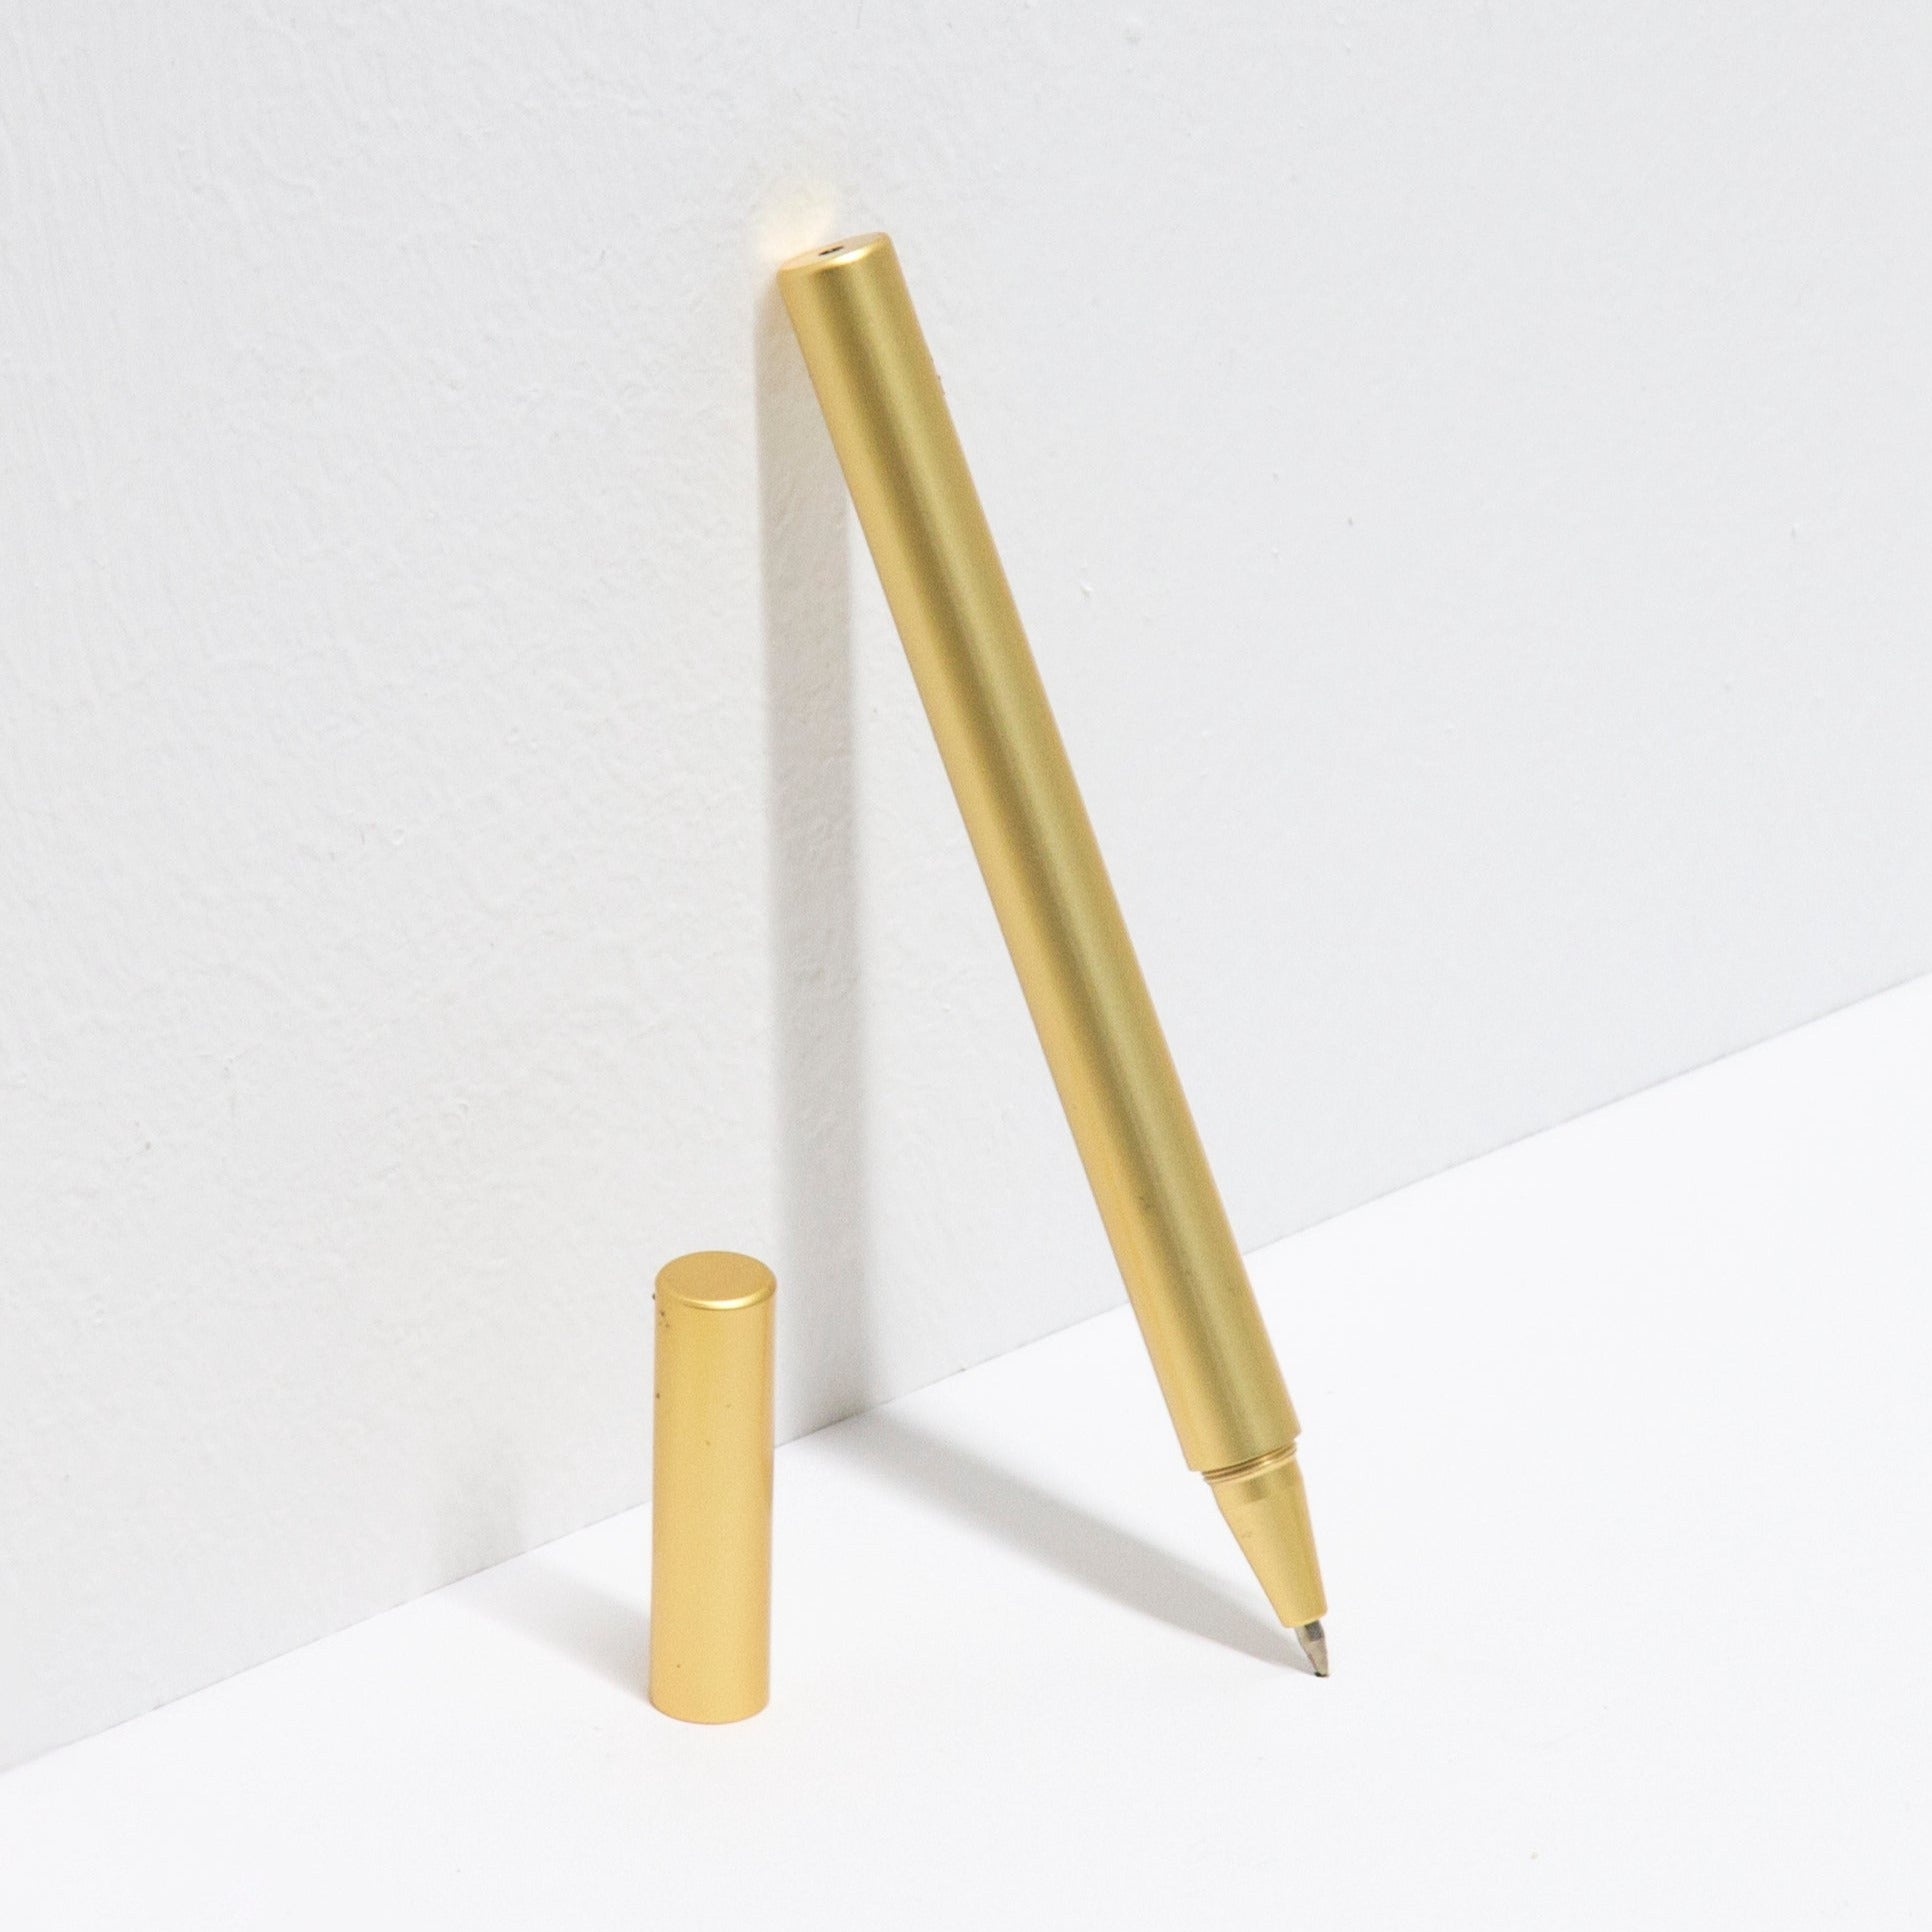 Octàgon Design Script Pen, minimal design and gold color